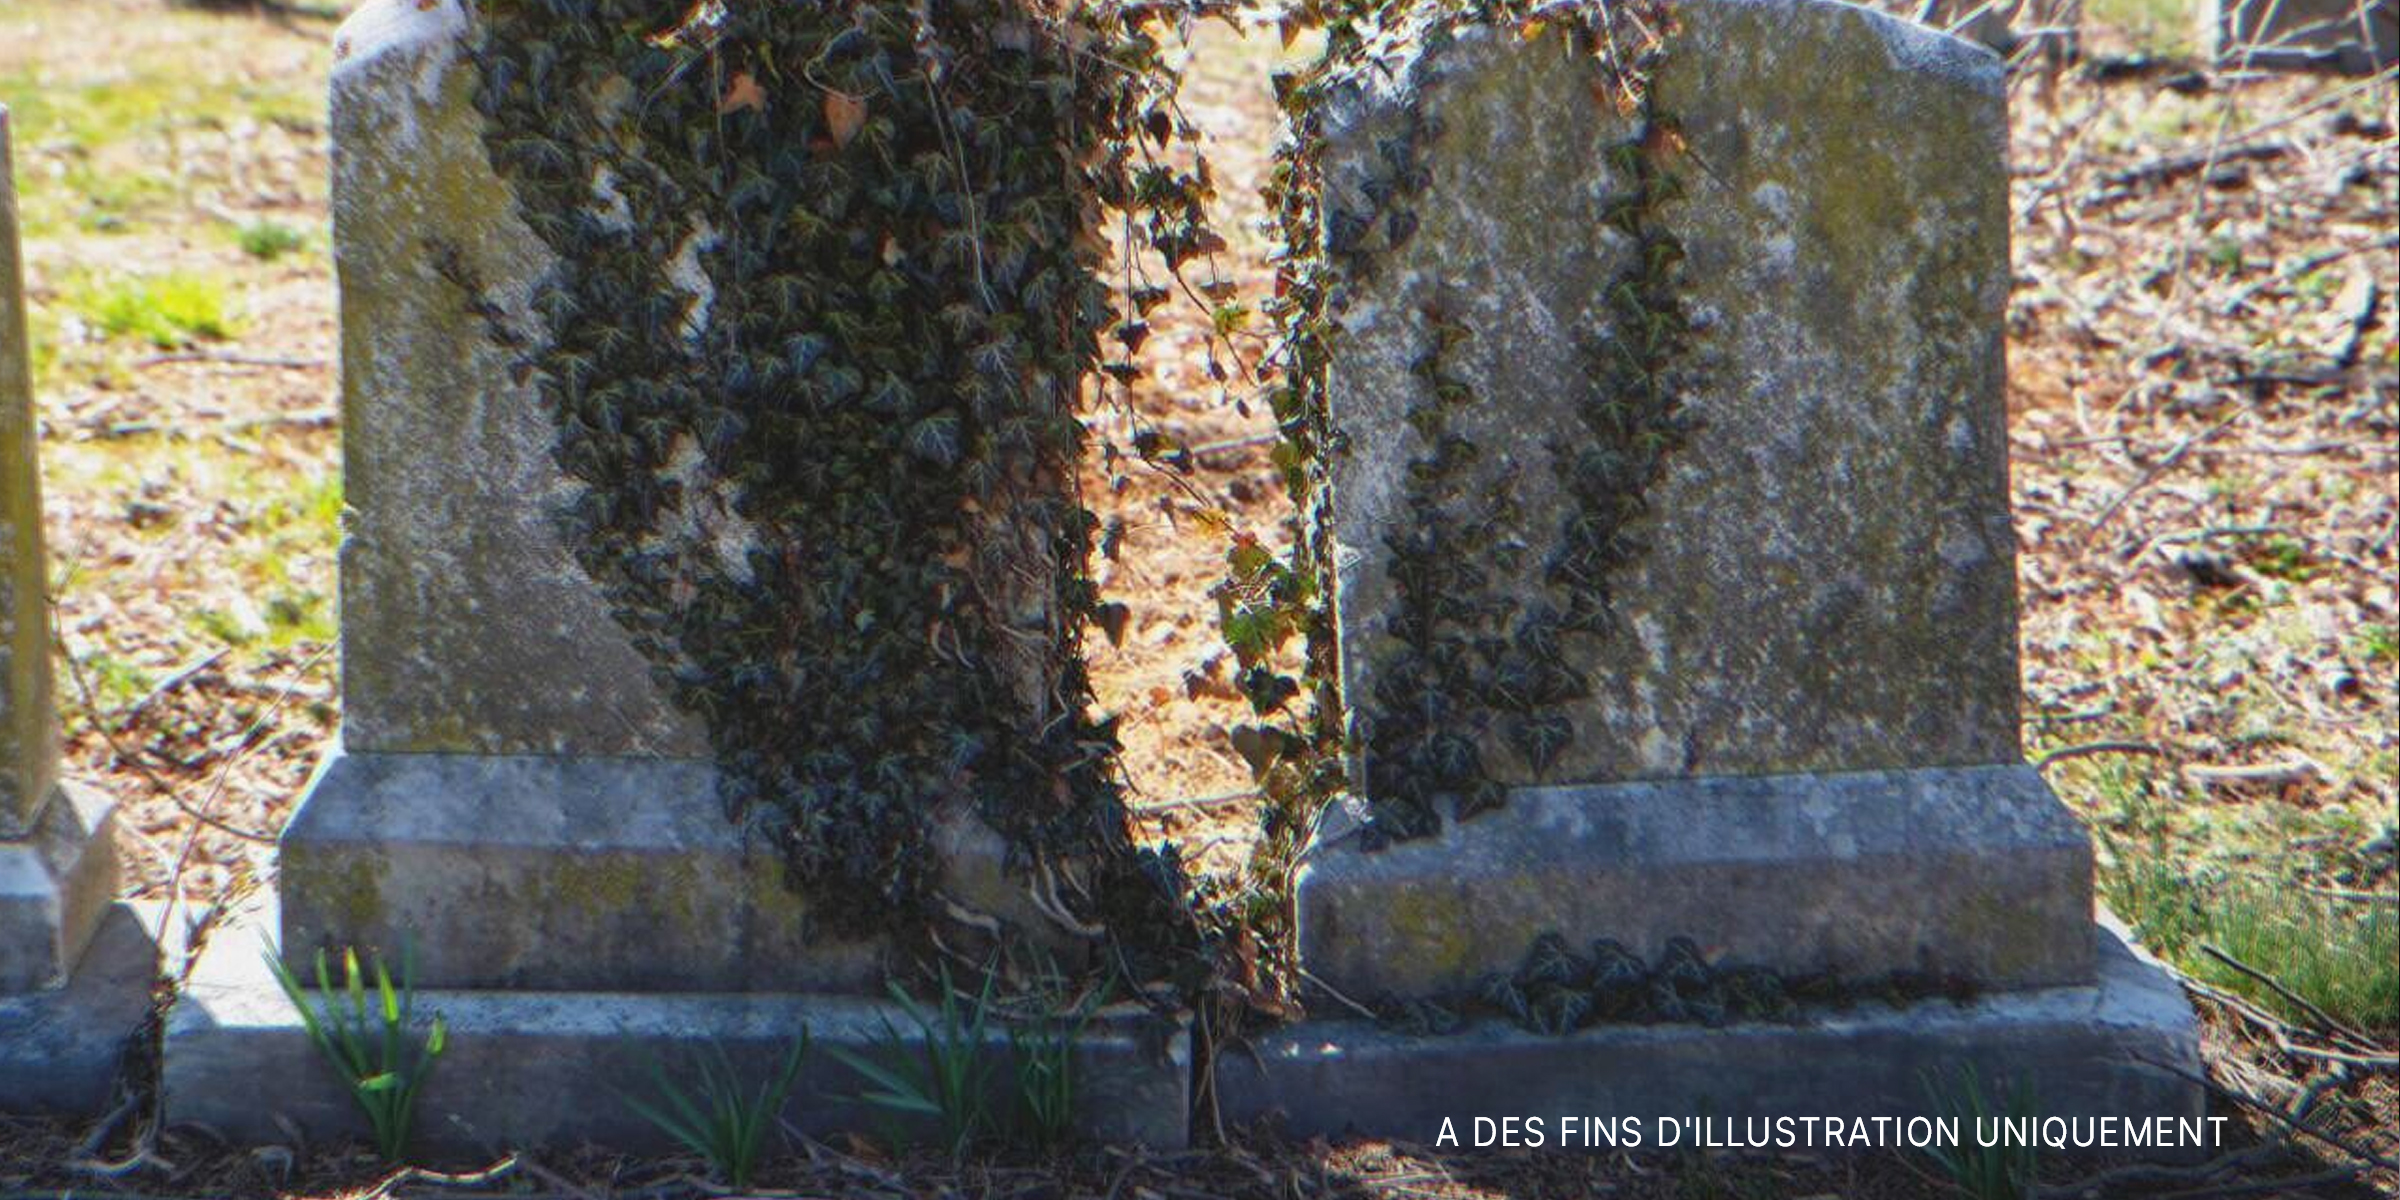 Tombes envahies par la végétation dans un cimetière | Source : Shutterstock